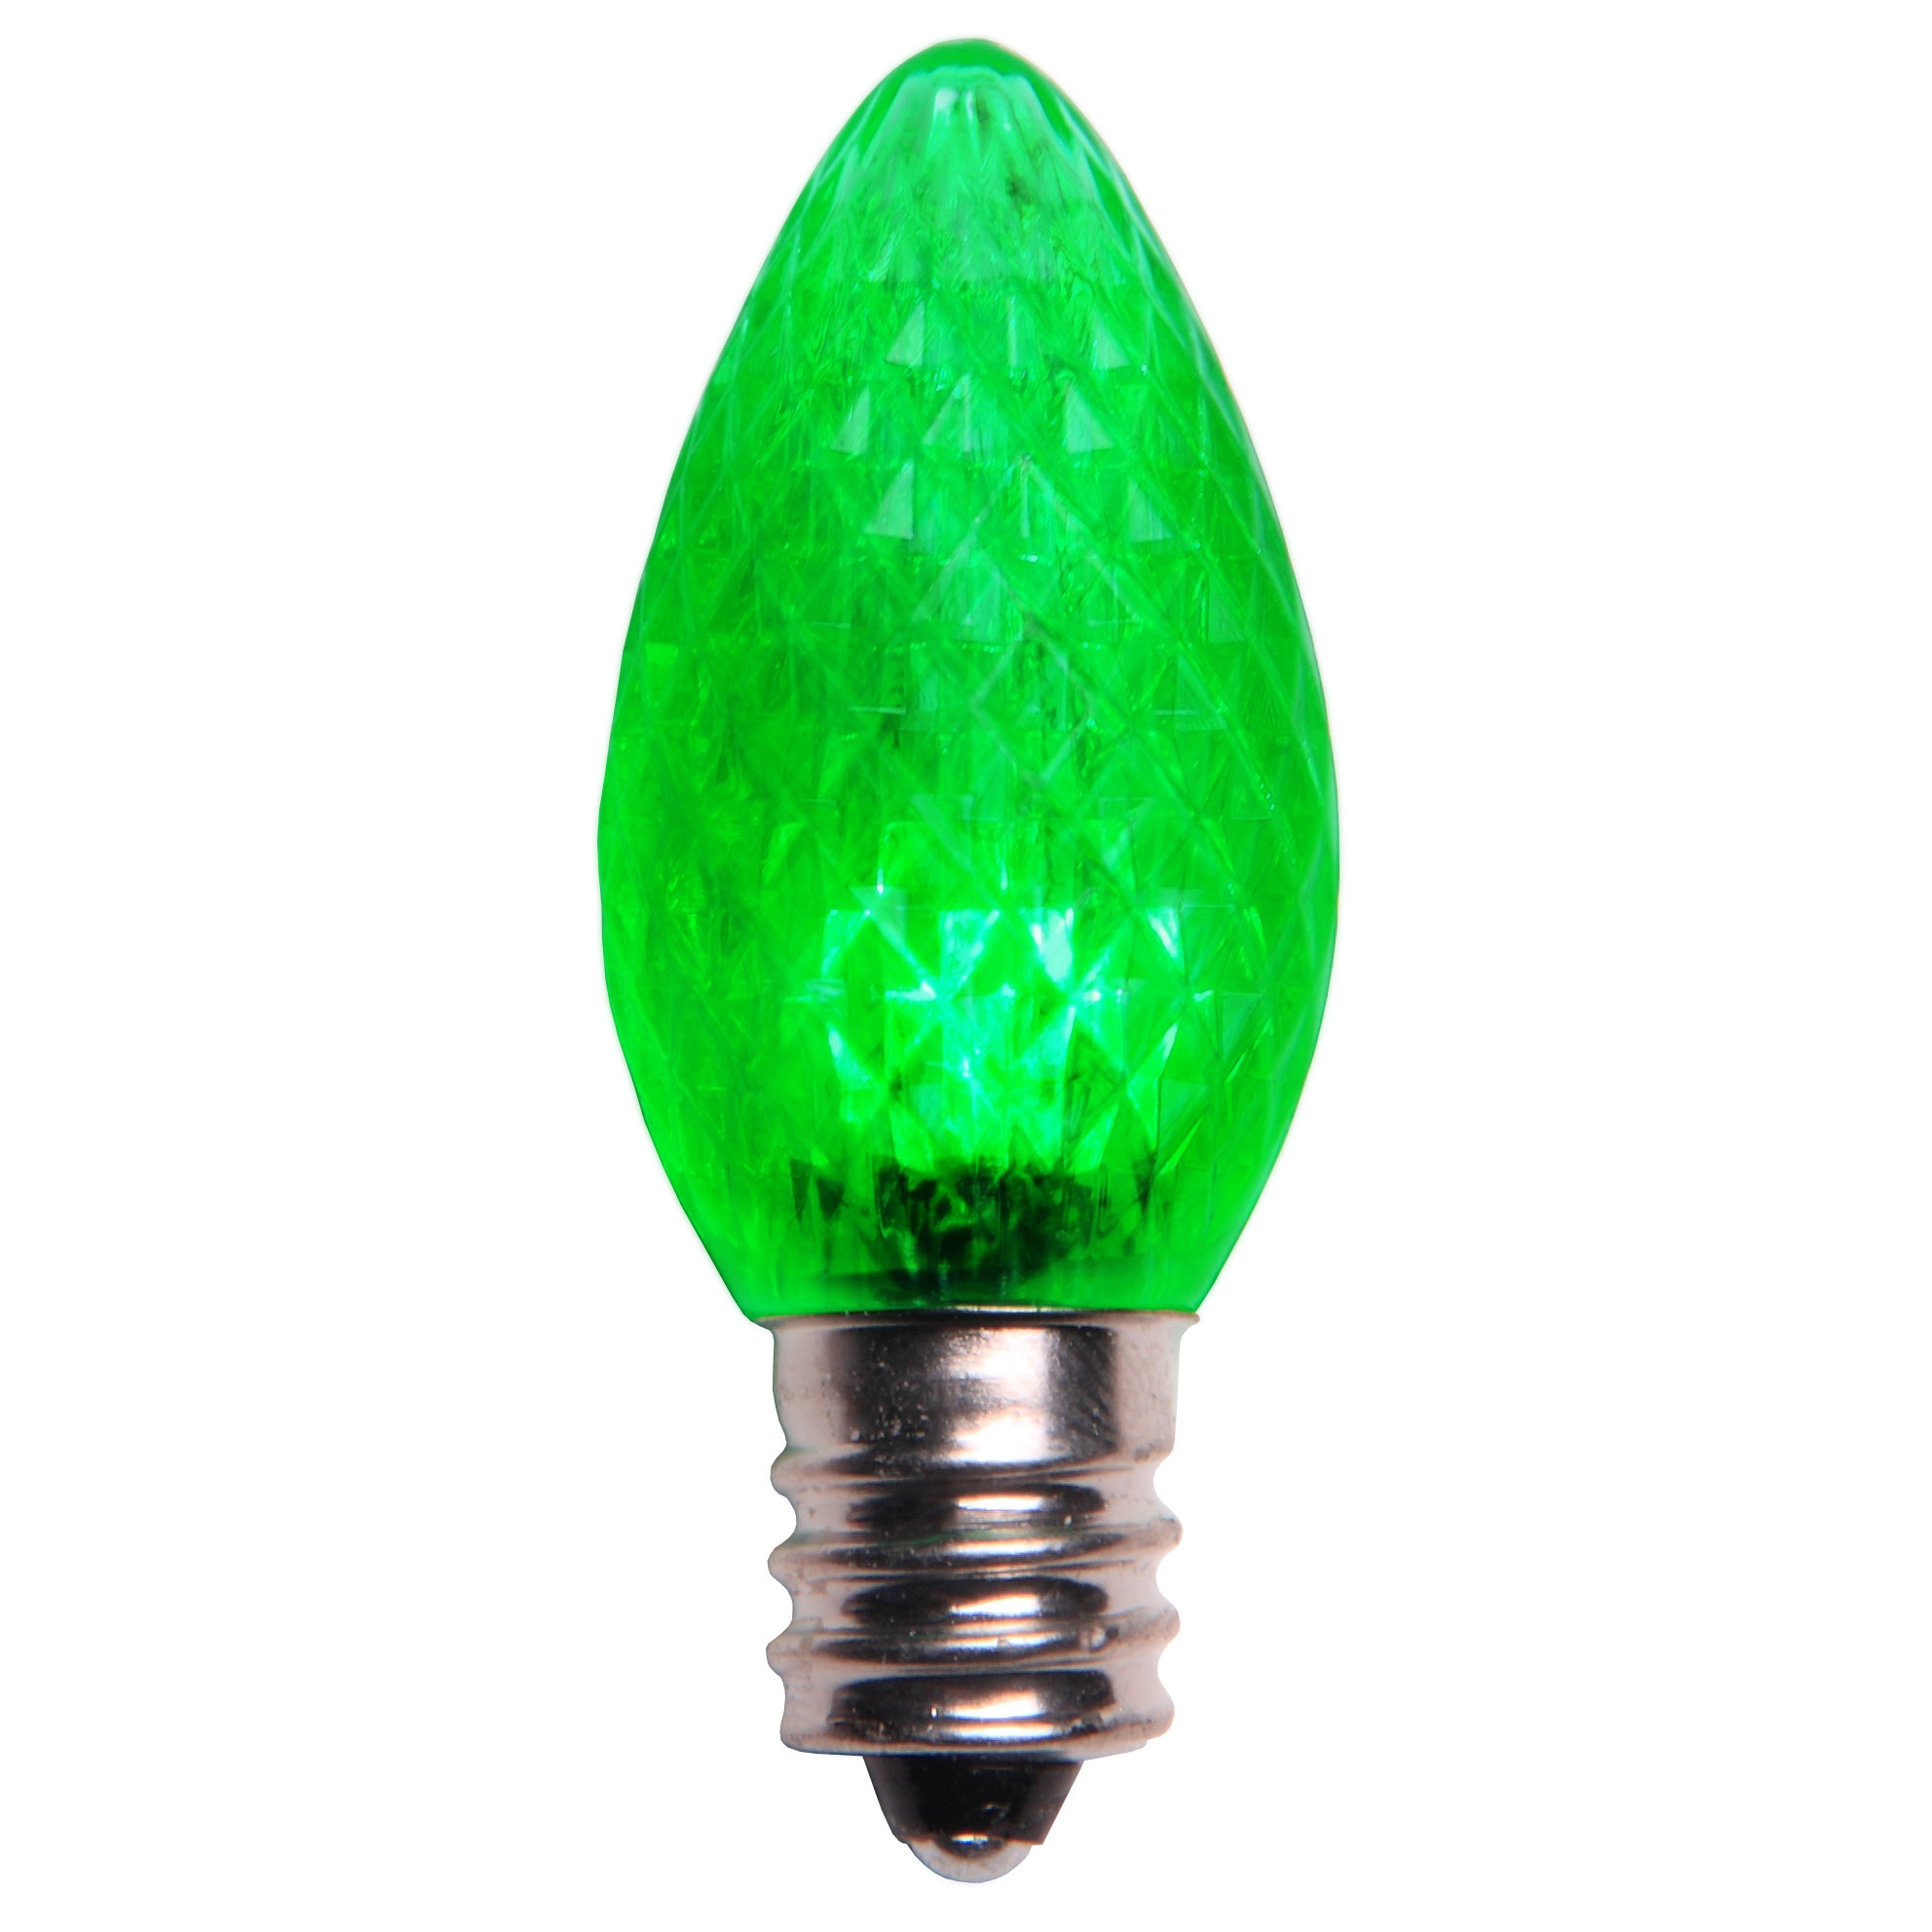 C7 Green LED Christmas Light Bulbs